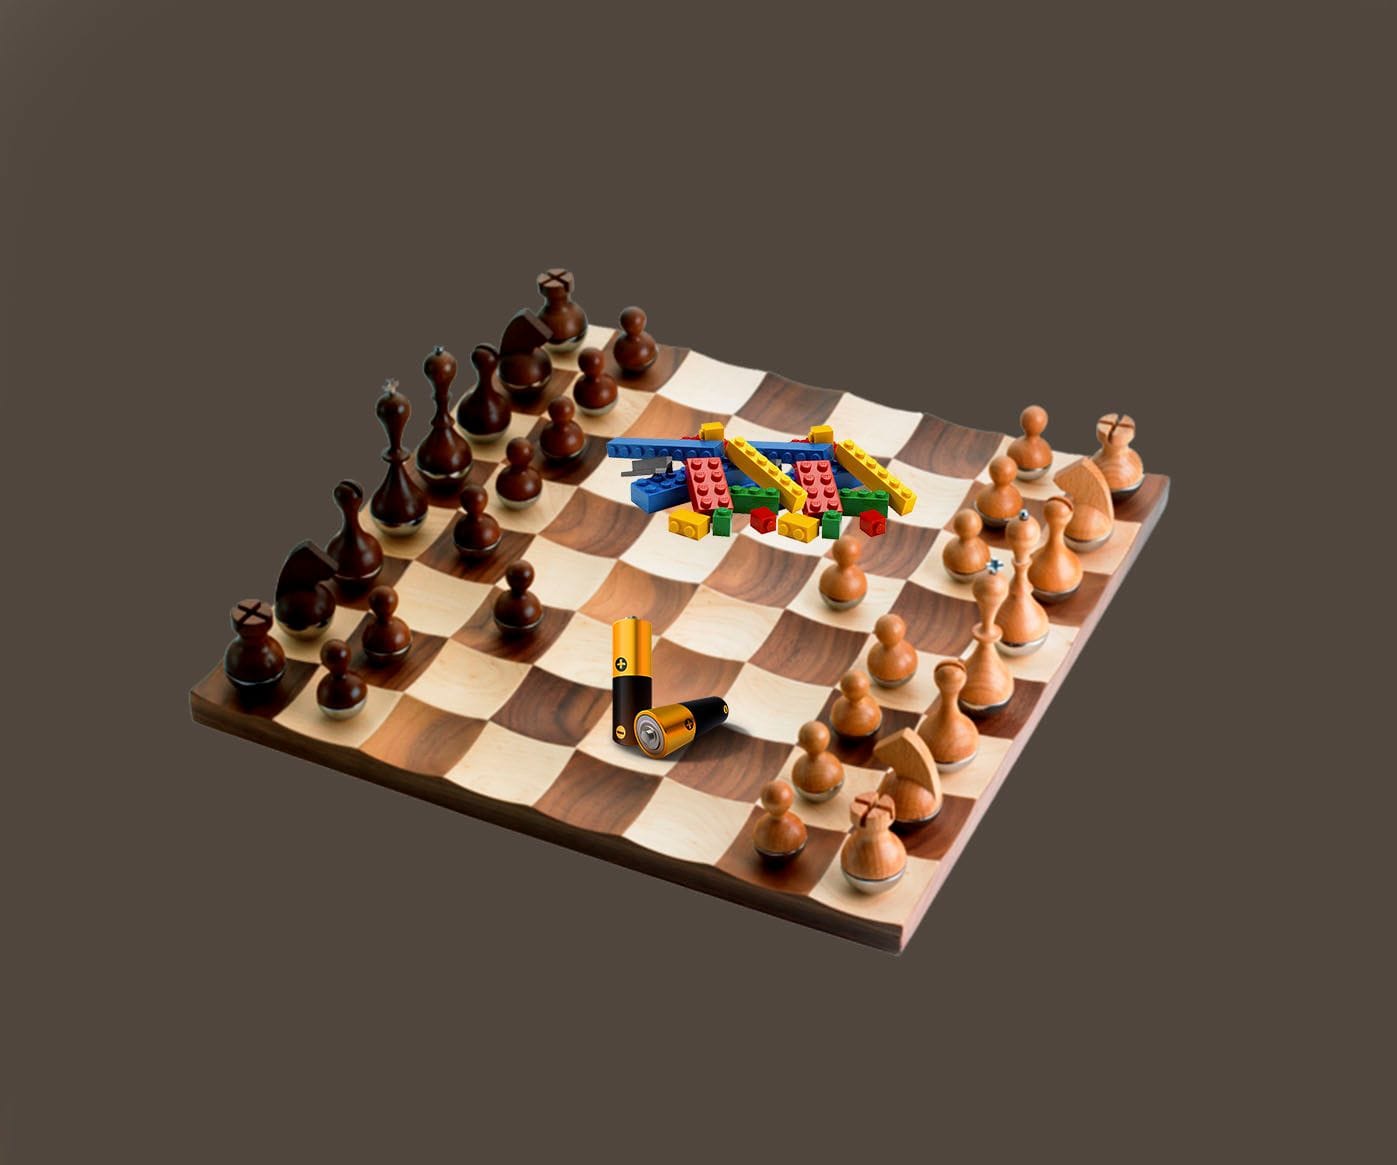 Безумные шахматы: как на Reddit ведут самую хаотичную партию